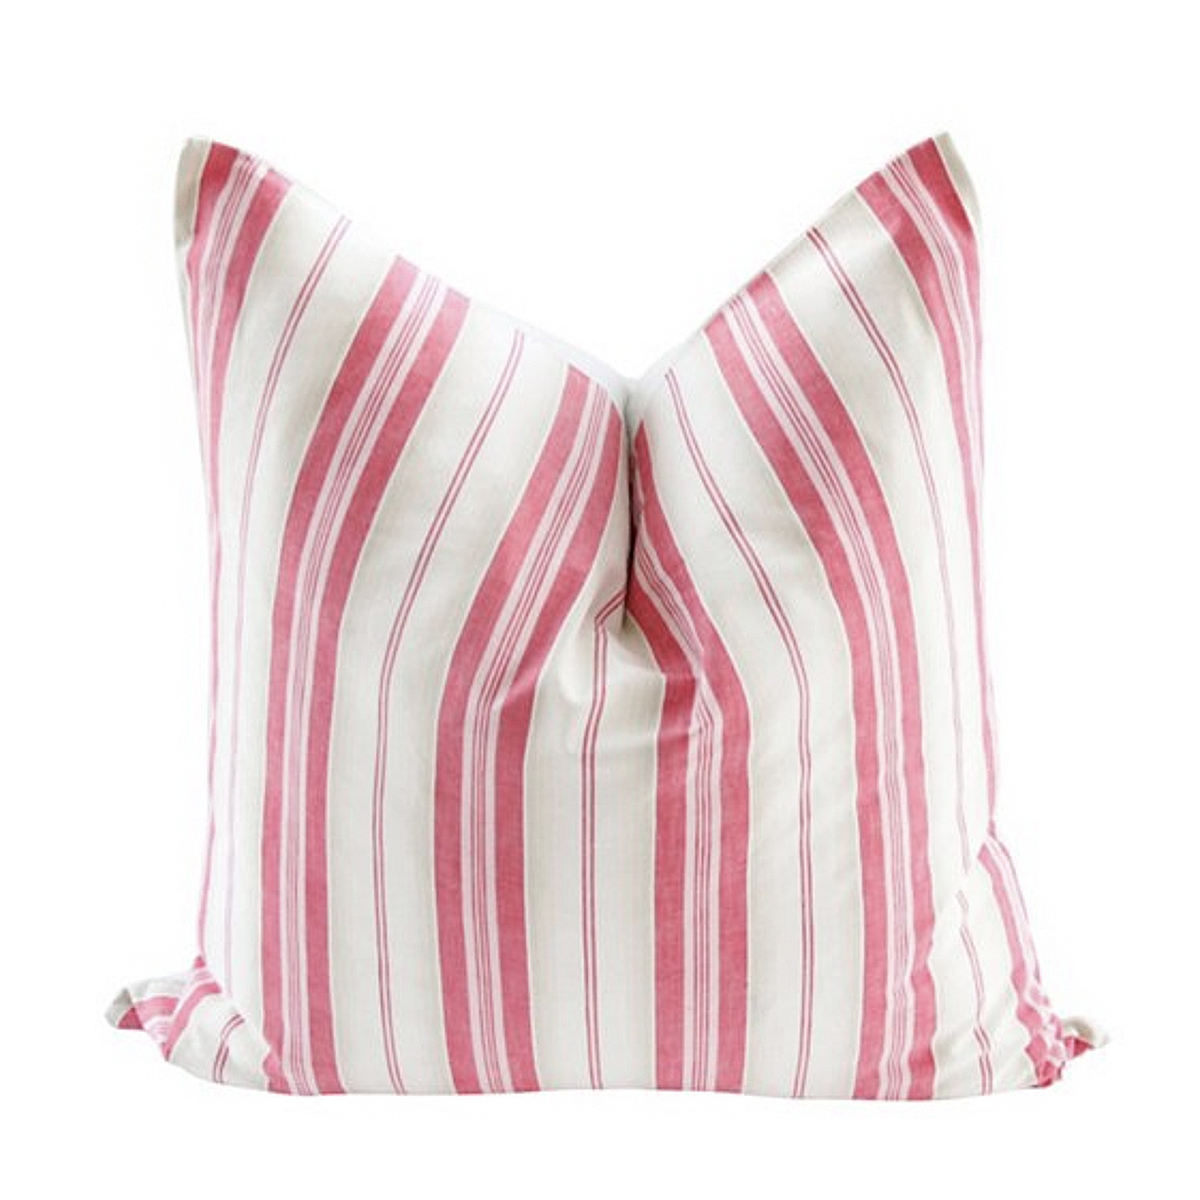 okl pillow stripe pink.jpg